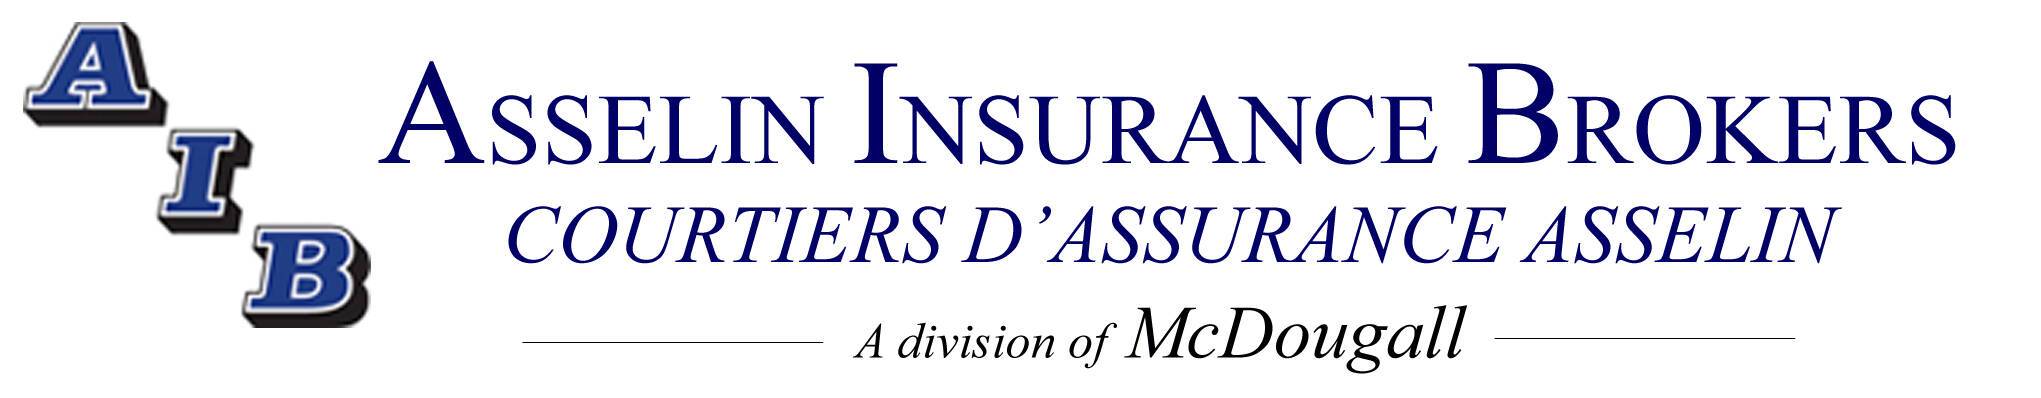 Asselin Insurance